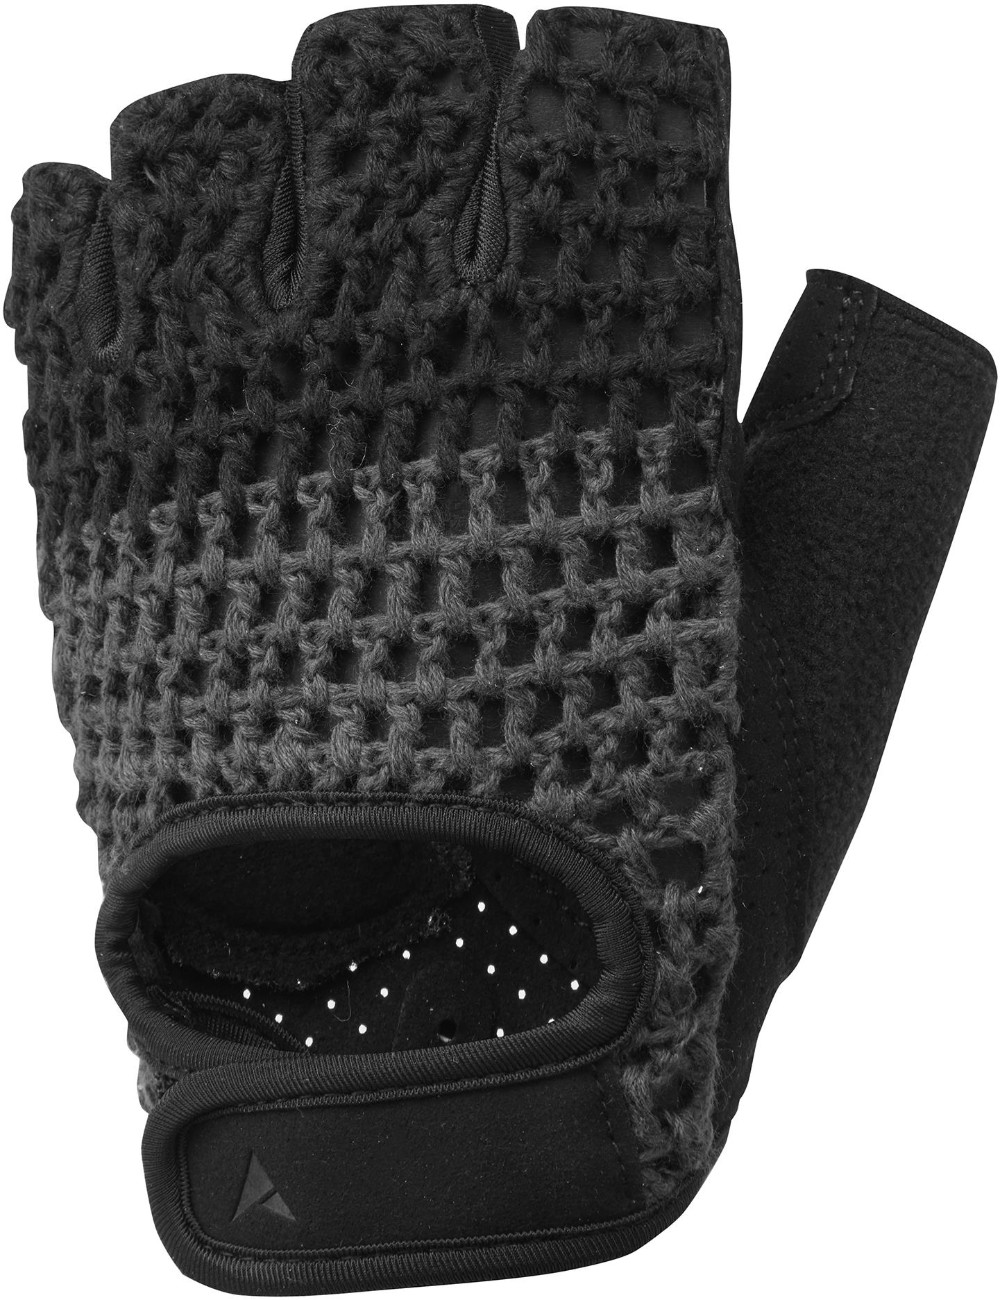 Crochet Mitts Short Finger Gloves image 0